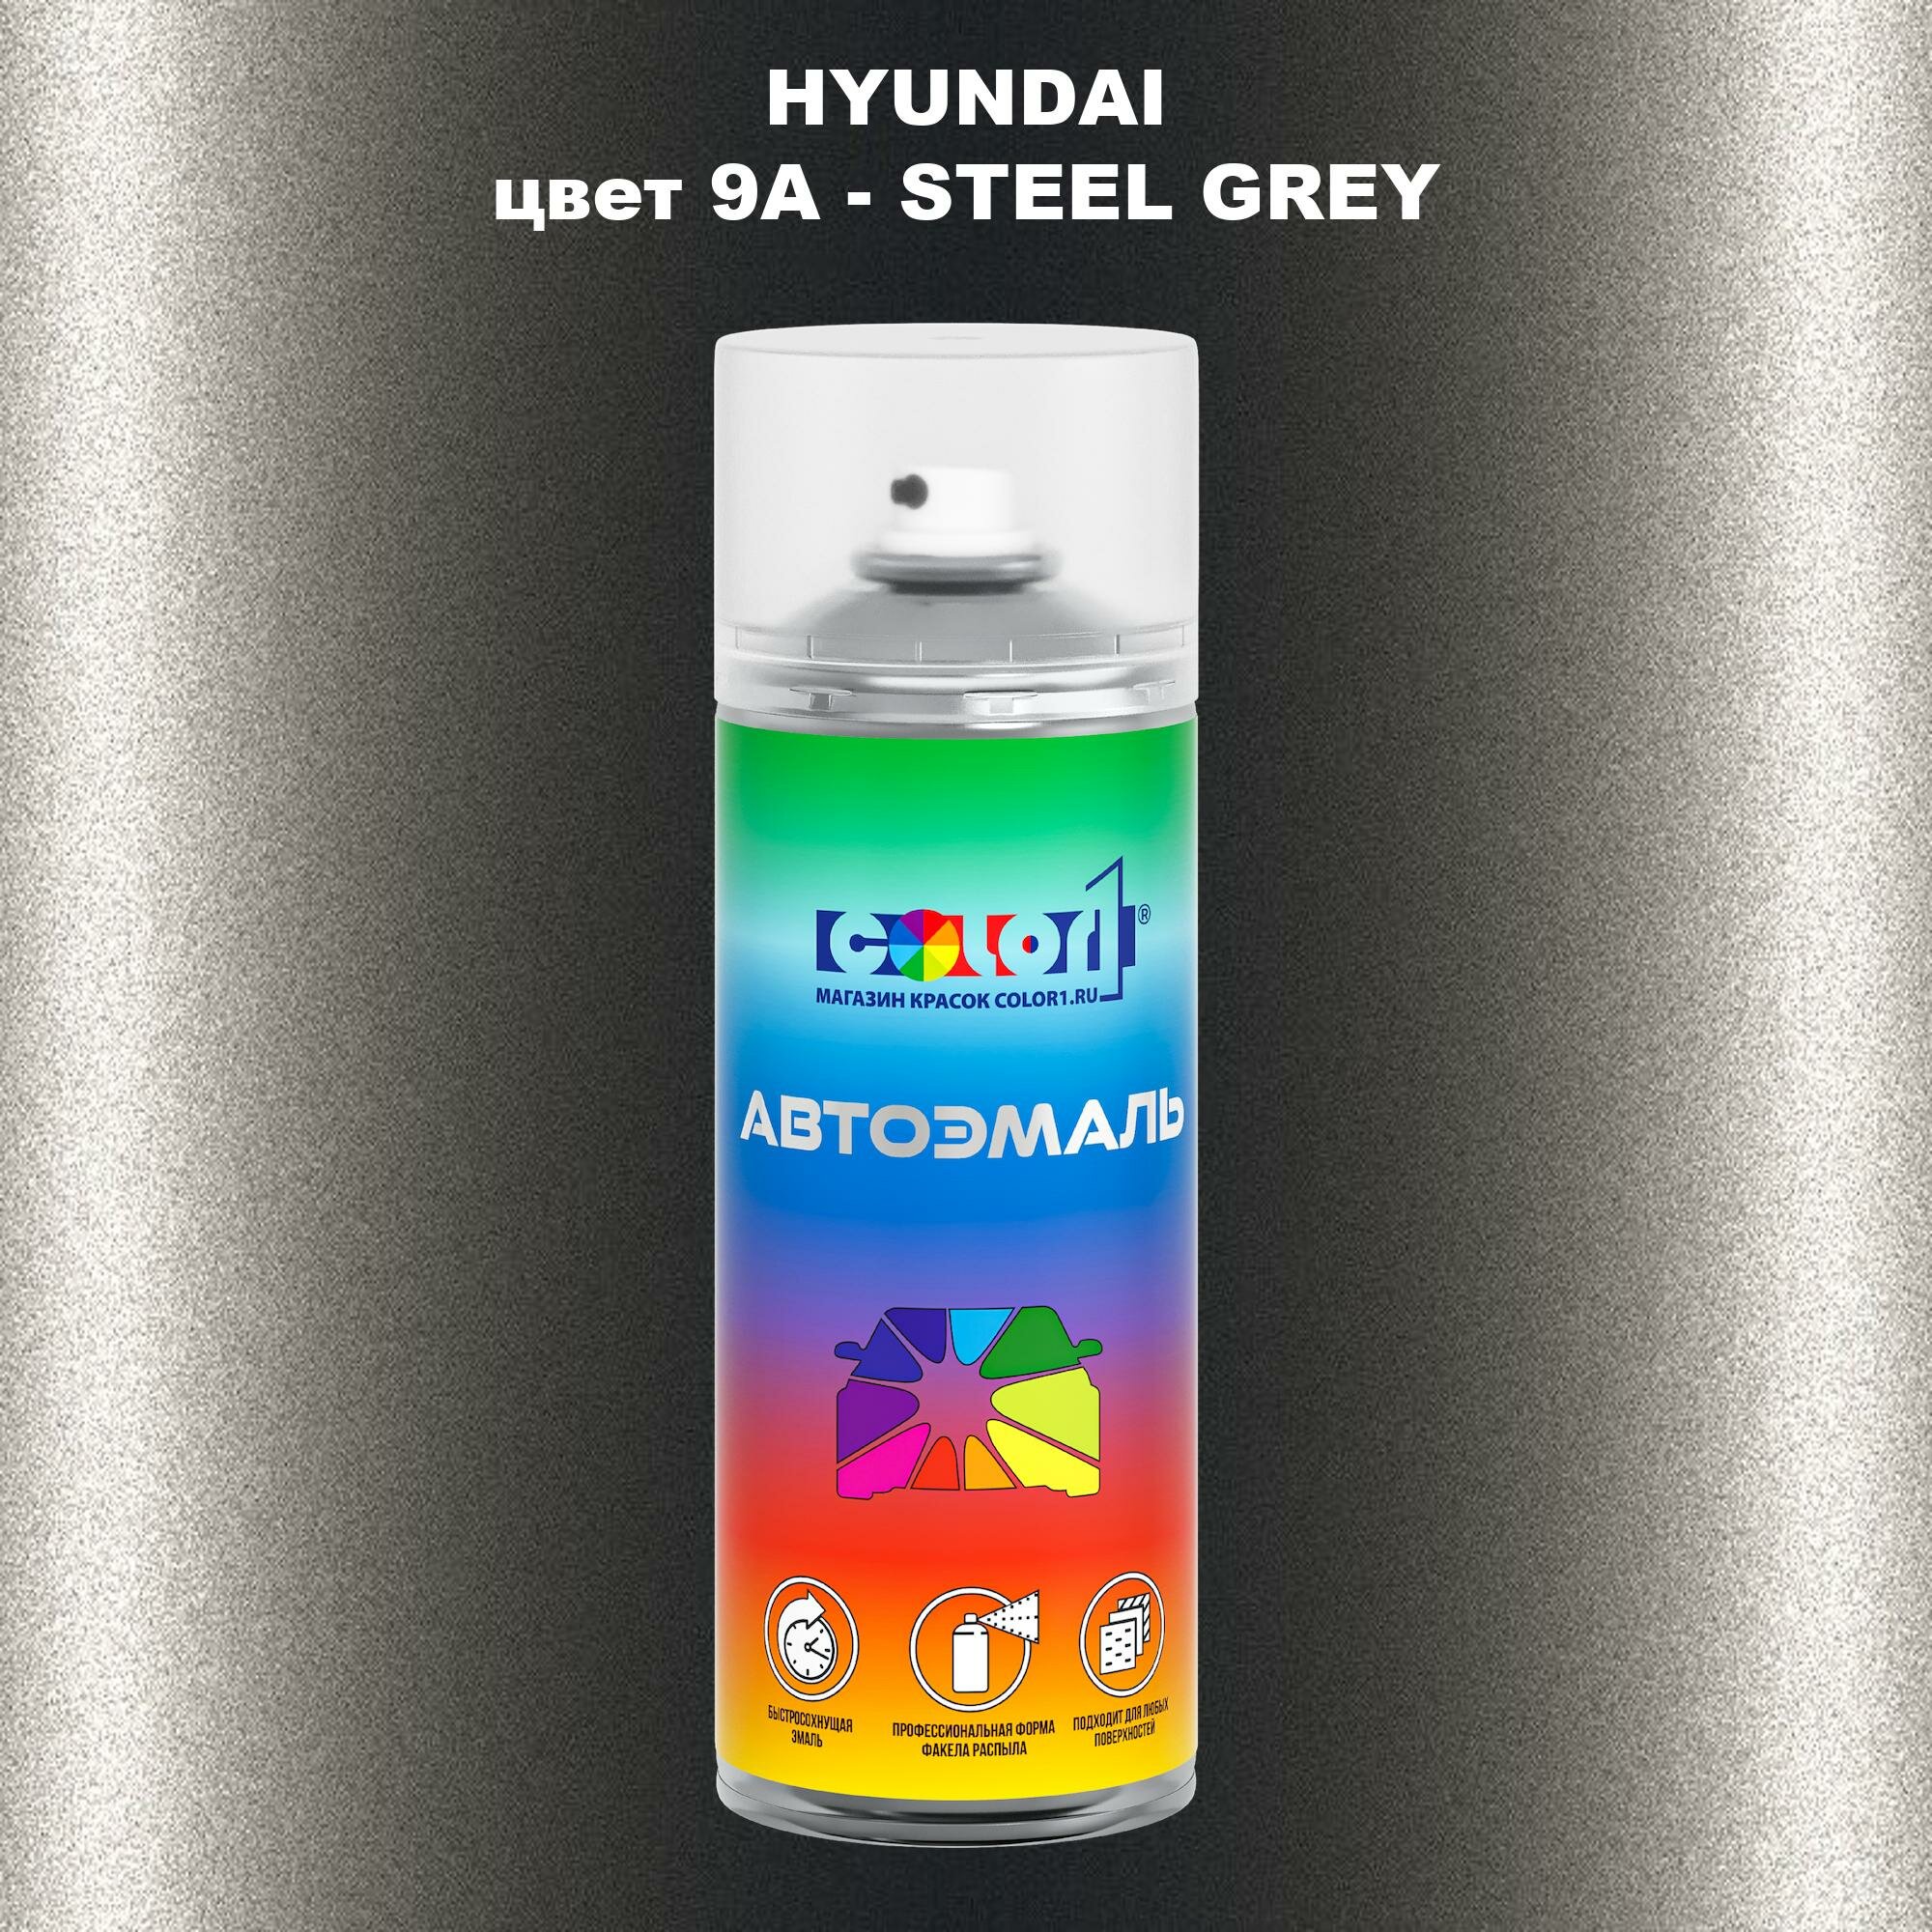 Аэрозольная краска COLOR1 для HYUNDAI, цвет 9A - STEEL GREY